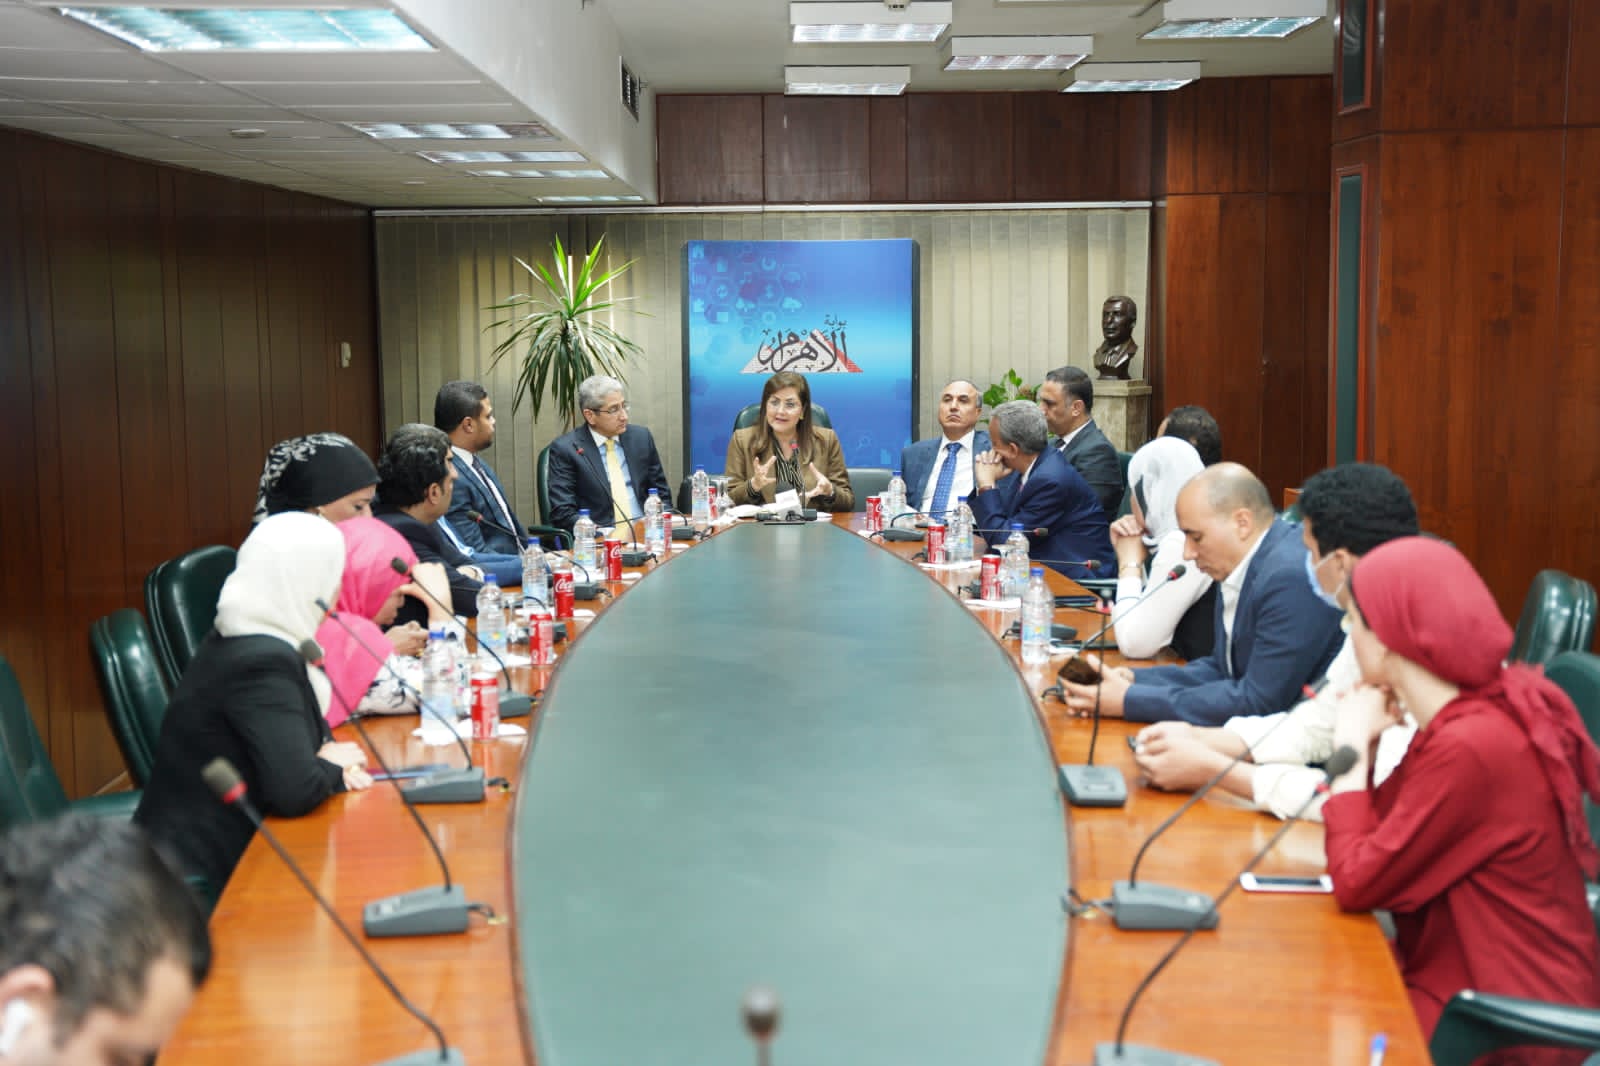 وزيرة التخطيط بندوة  بوابة الأهرام  الصندوق السيادي إحدى آليات تعزيز الشراكة مع القطاع الخاص المحلي والأجنبي